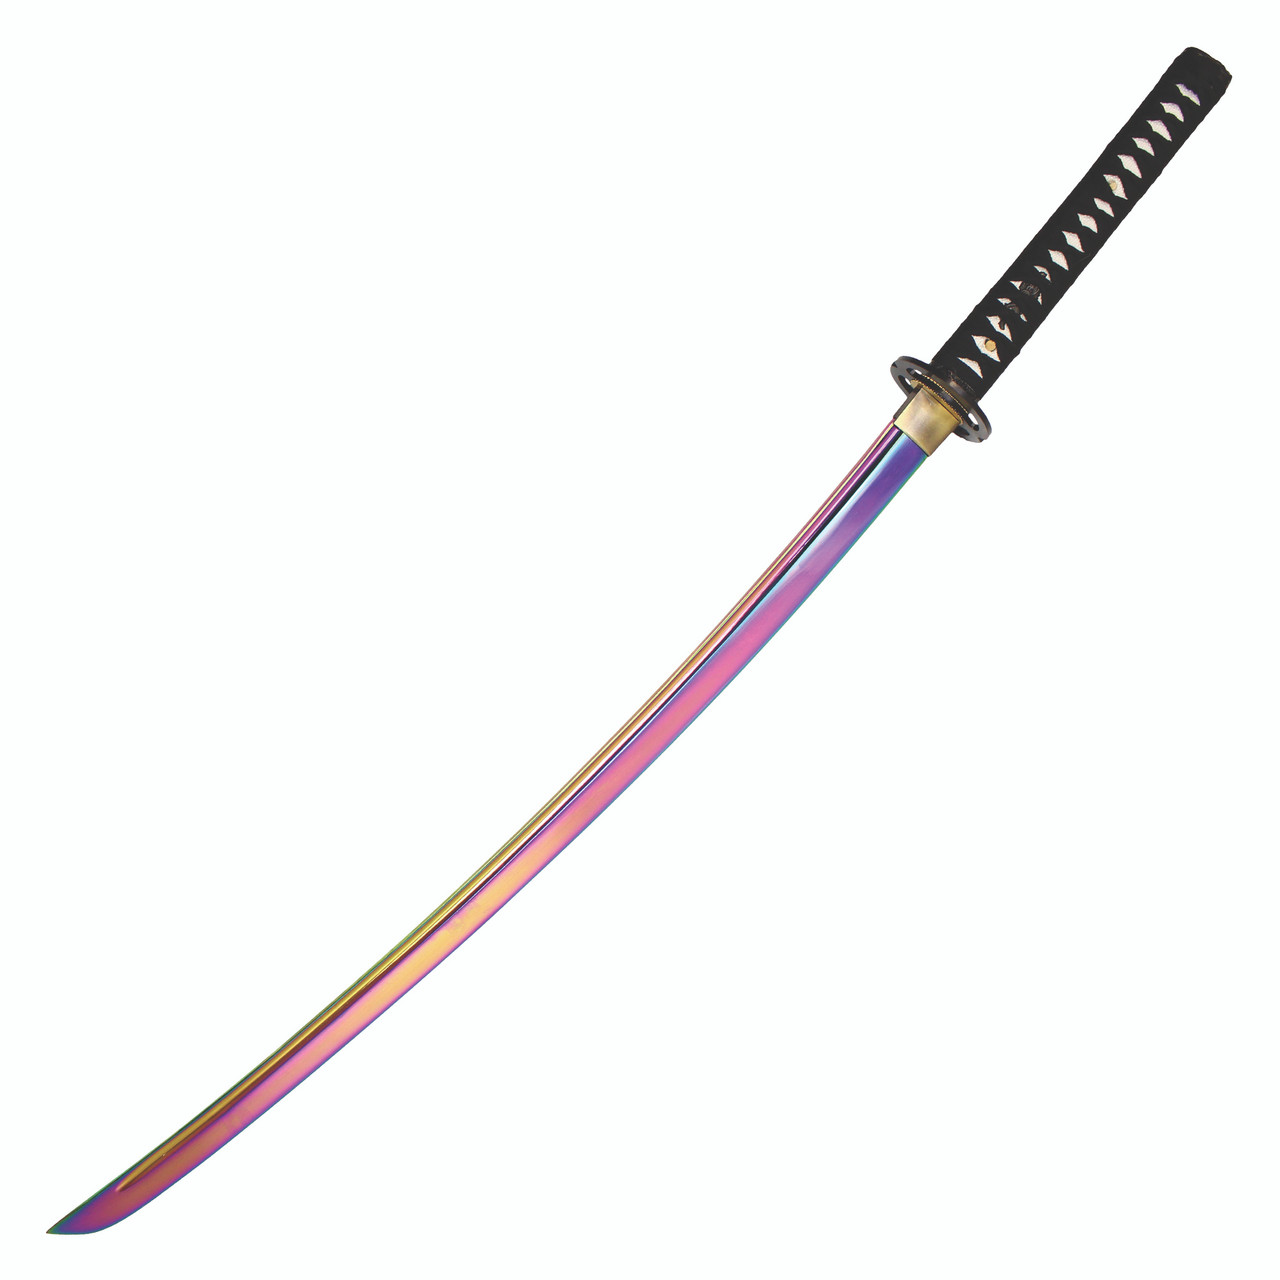 41“ SHARP Blade Katana Handmade Samurai Sword w/ Musashi Tsuba & Scab